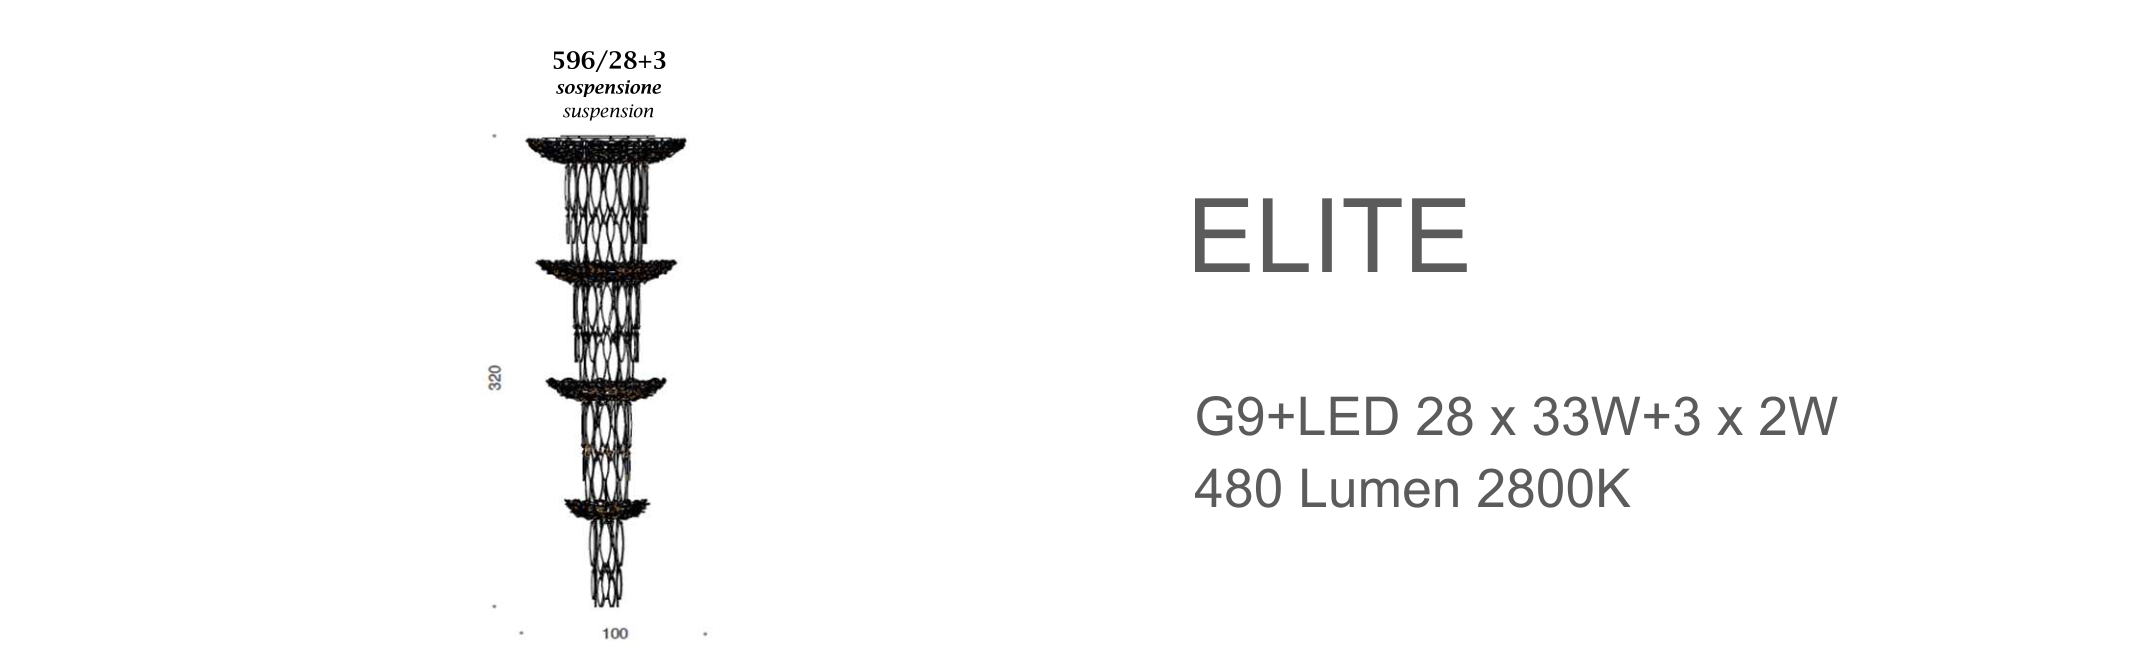 Elite 596/28+3